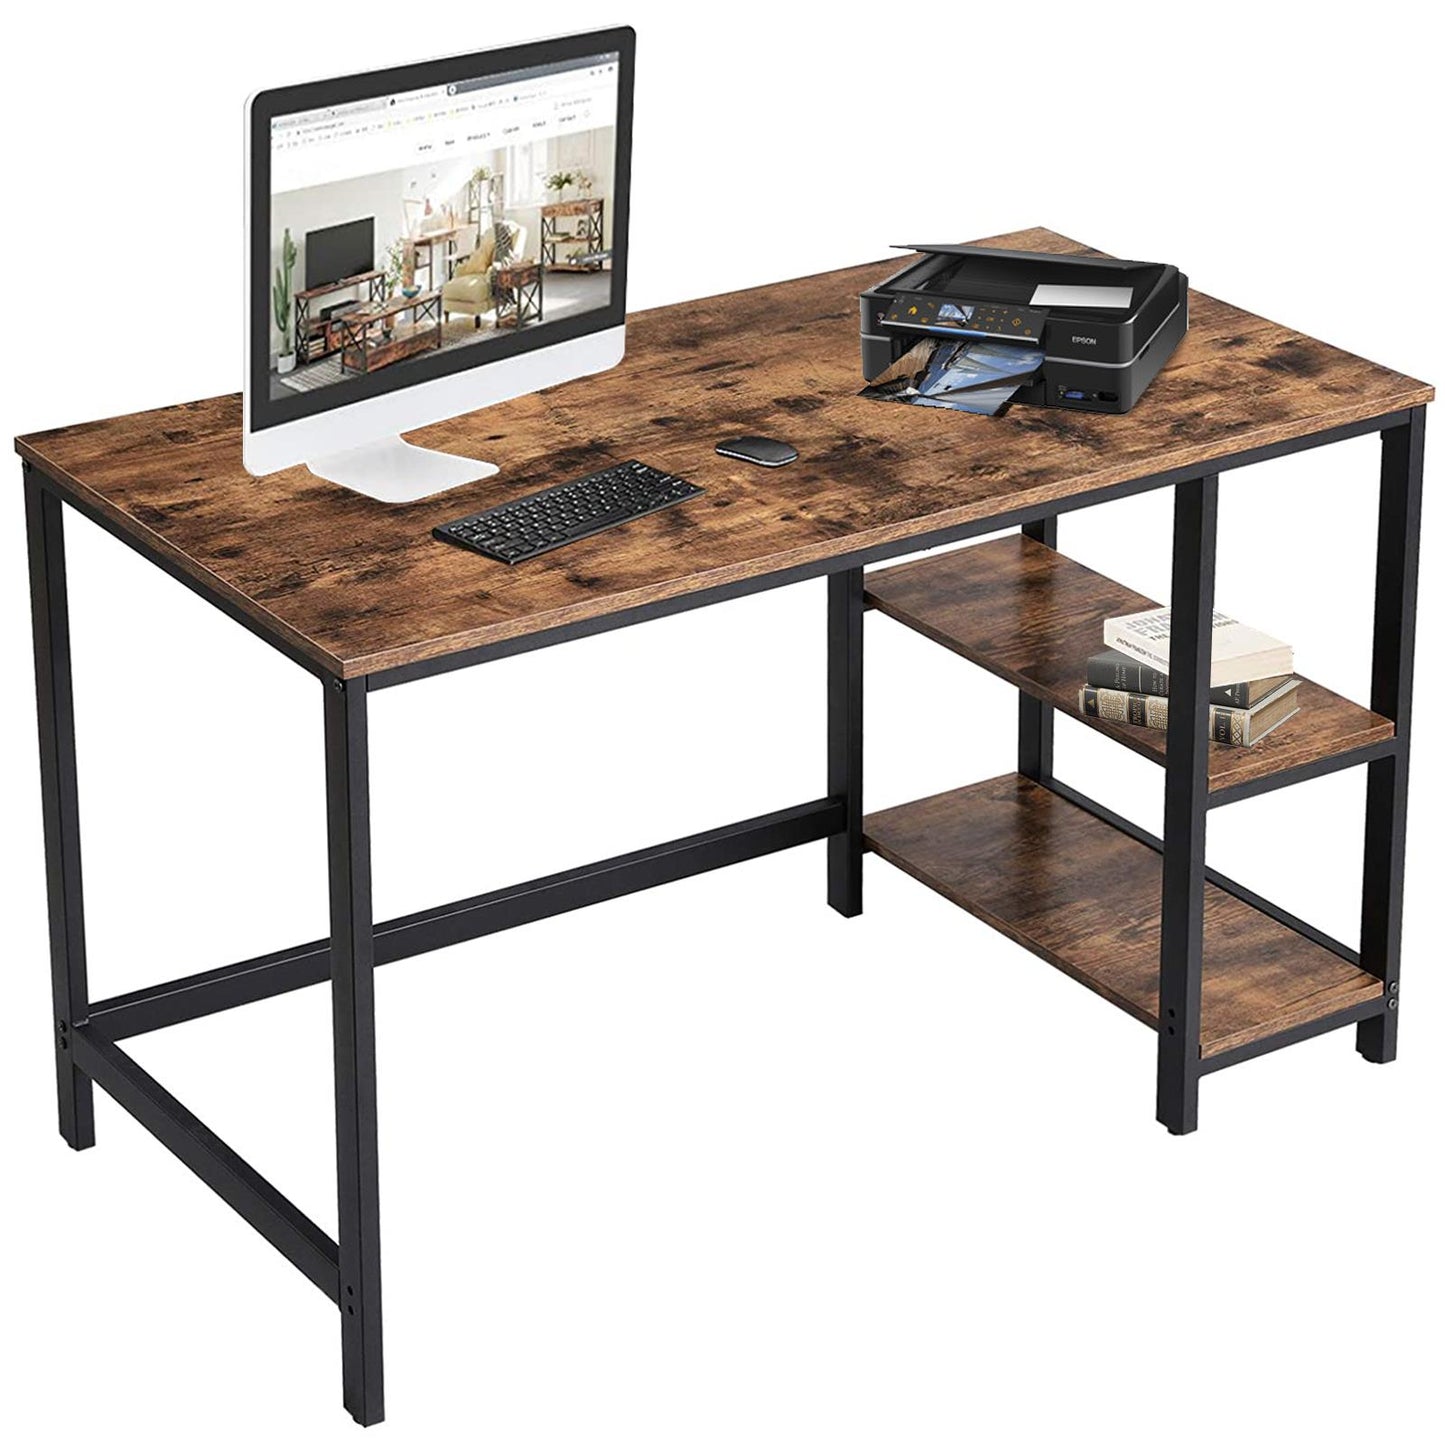 Modern Design Desk With Multiple Storage Shelves